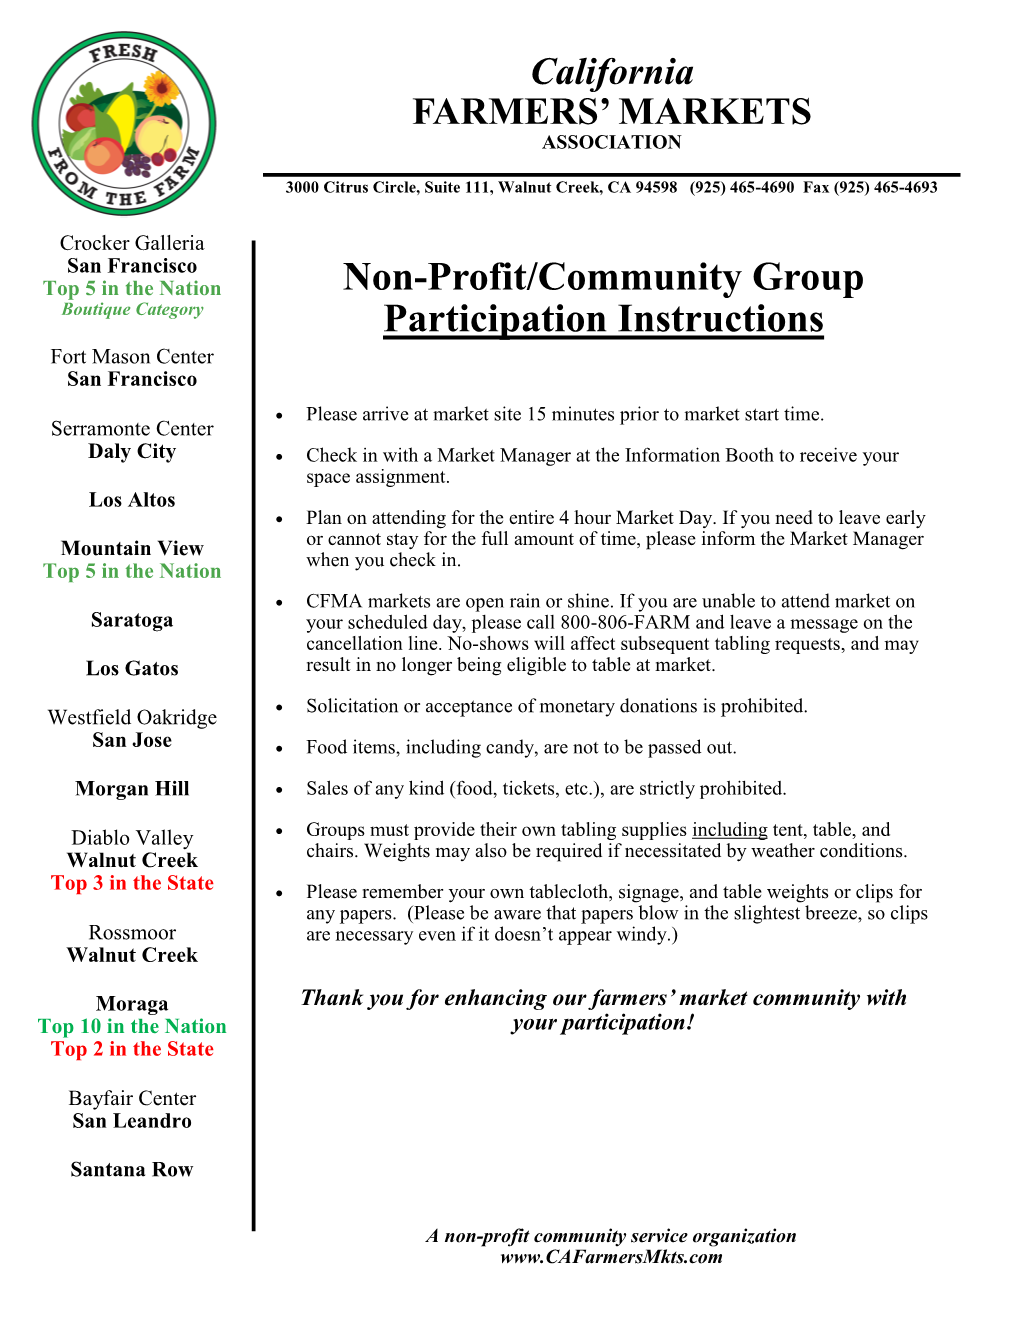 Non-Profit/Community Group Participation Instructions